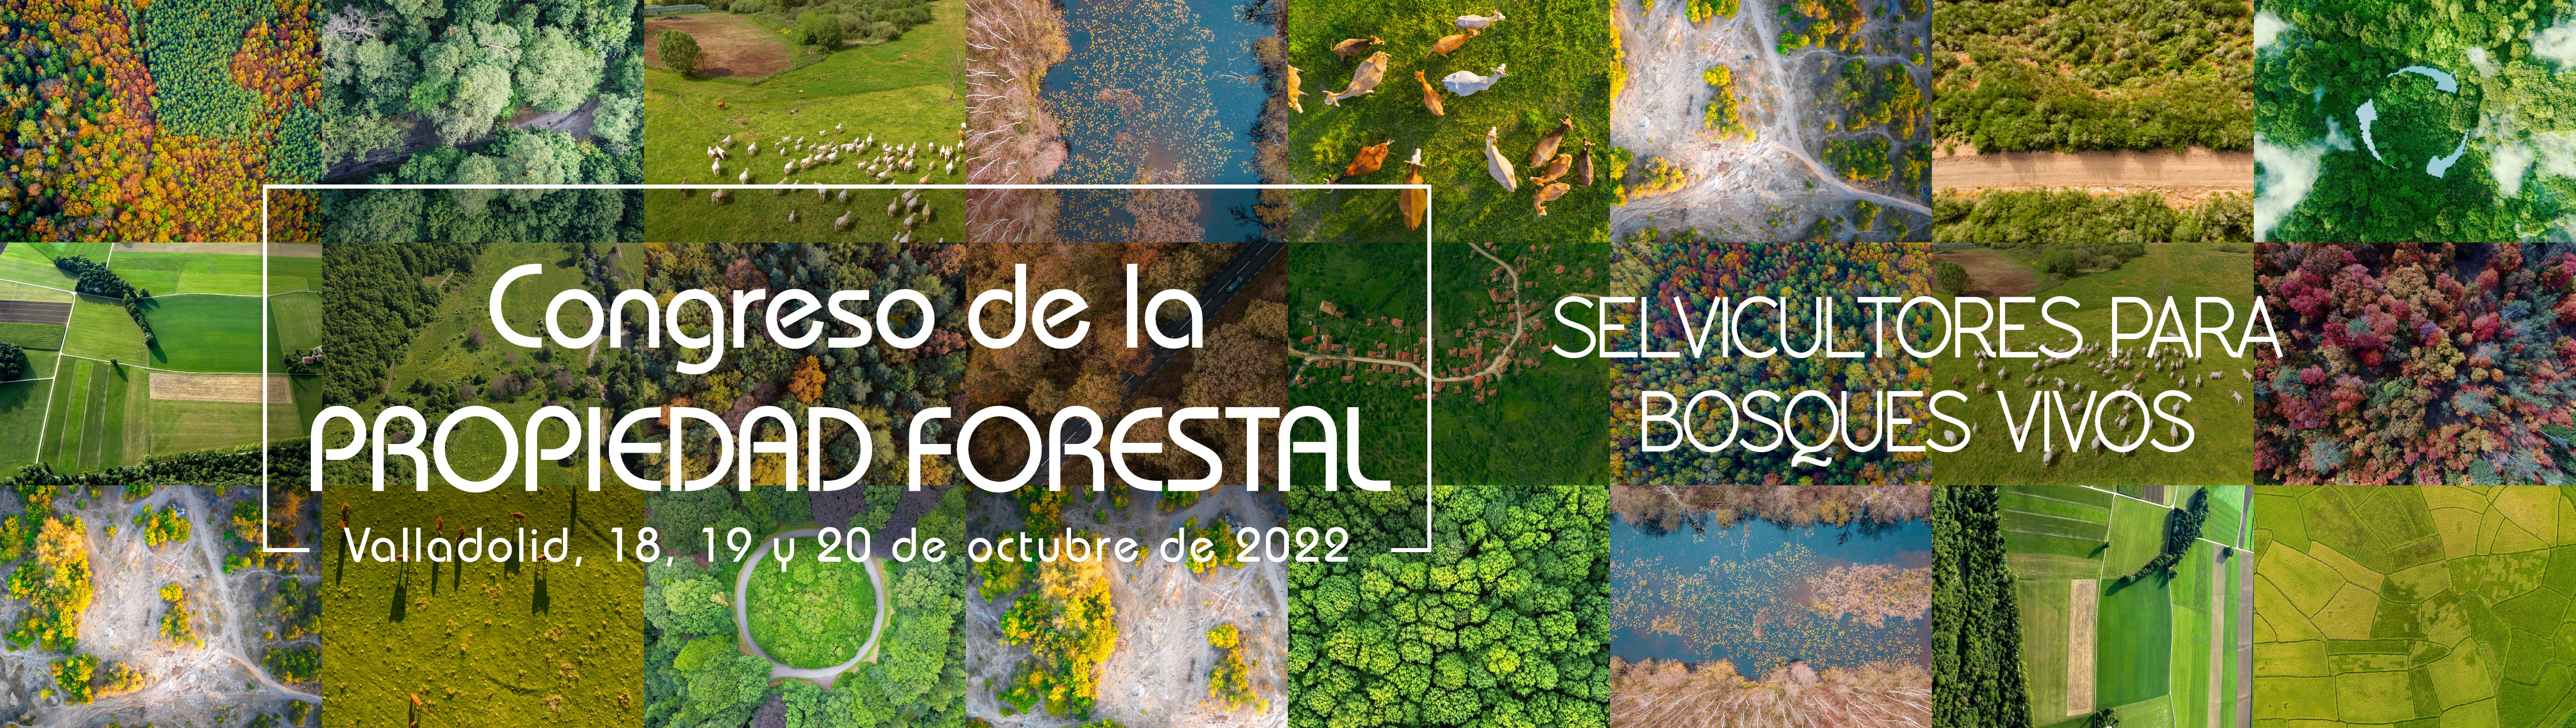 Congreso de la Propiedad Forestal 2022